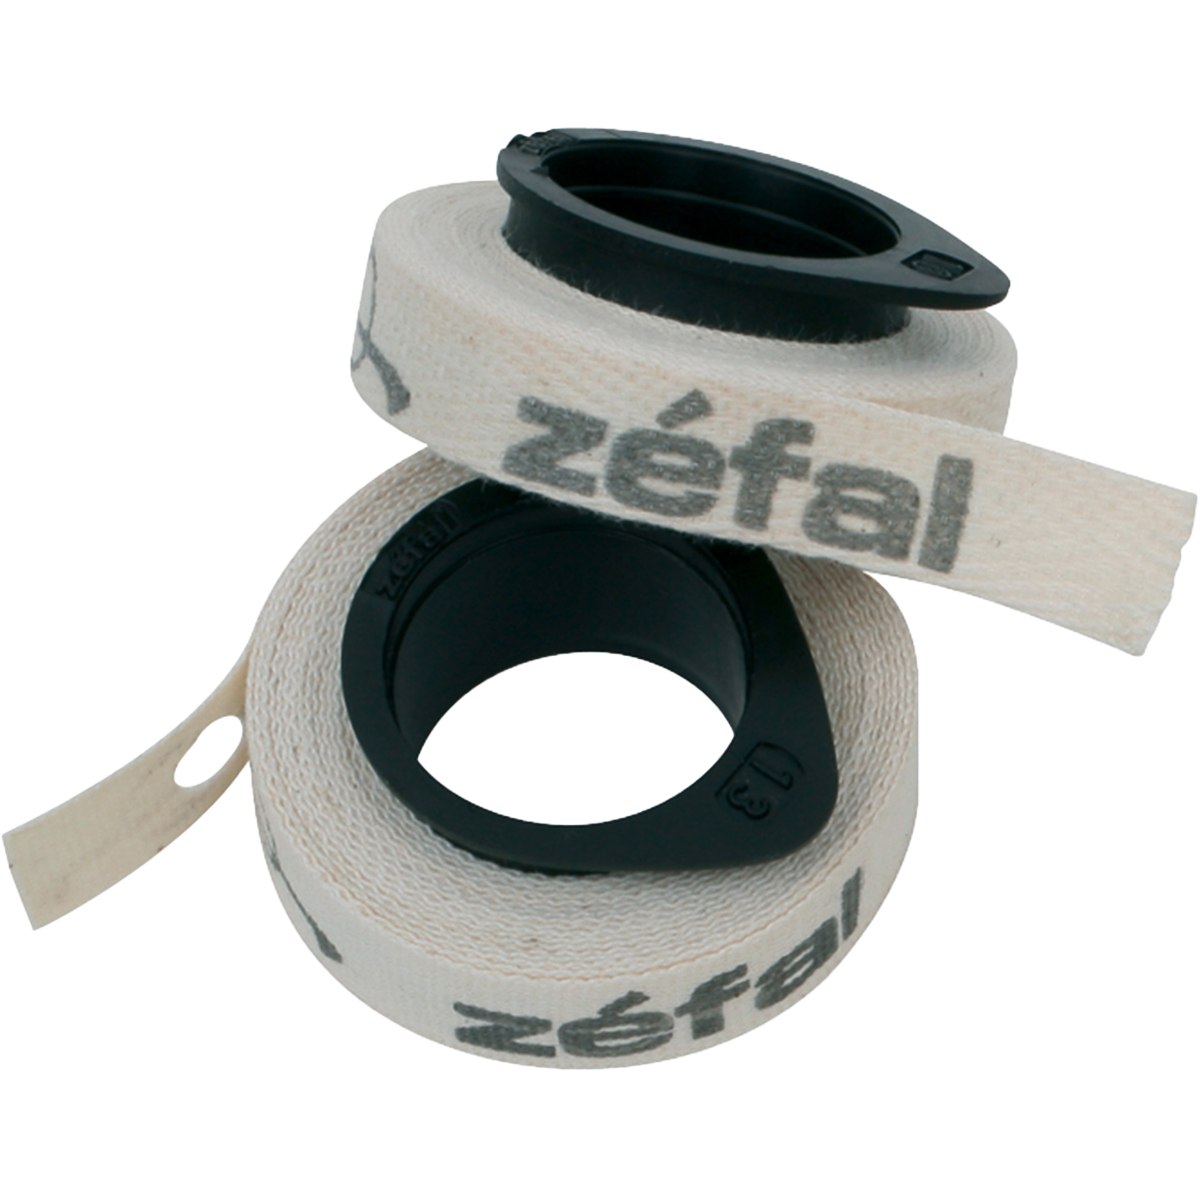 Productfoto van Zéfal Cotton Tapes Anti-Puncture Rim Strip - 2 pcs.